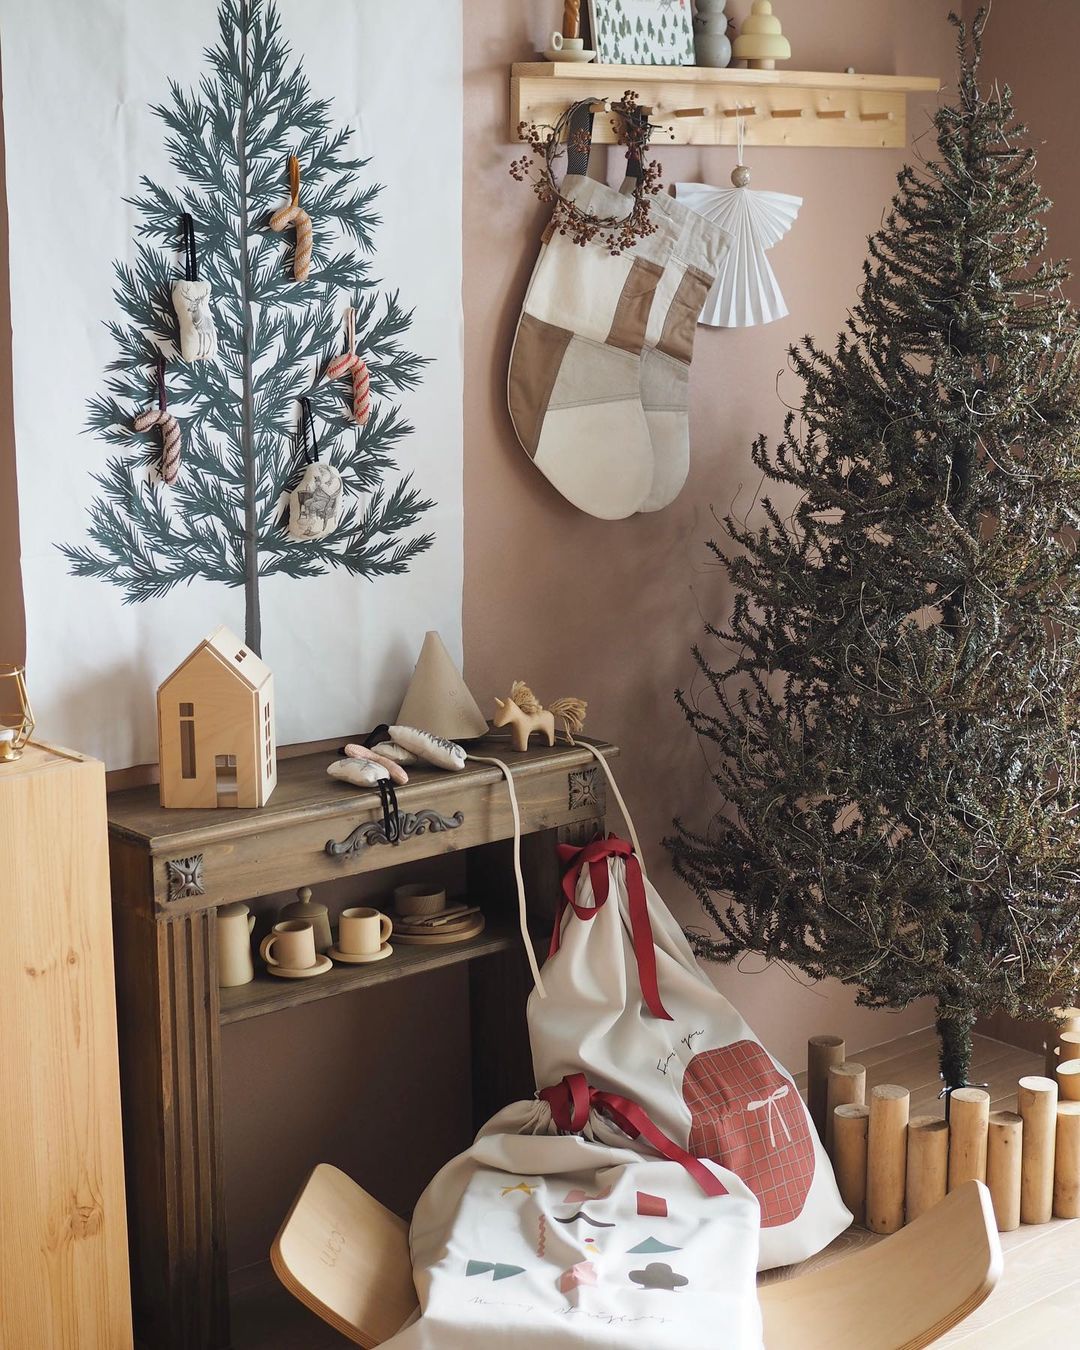 クリスマス気分が一気に盛り上がる！「クリスマスツリー タペストリー」を飾ったインスタグラマーさんの素敵なお部屋をご紹介